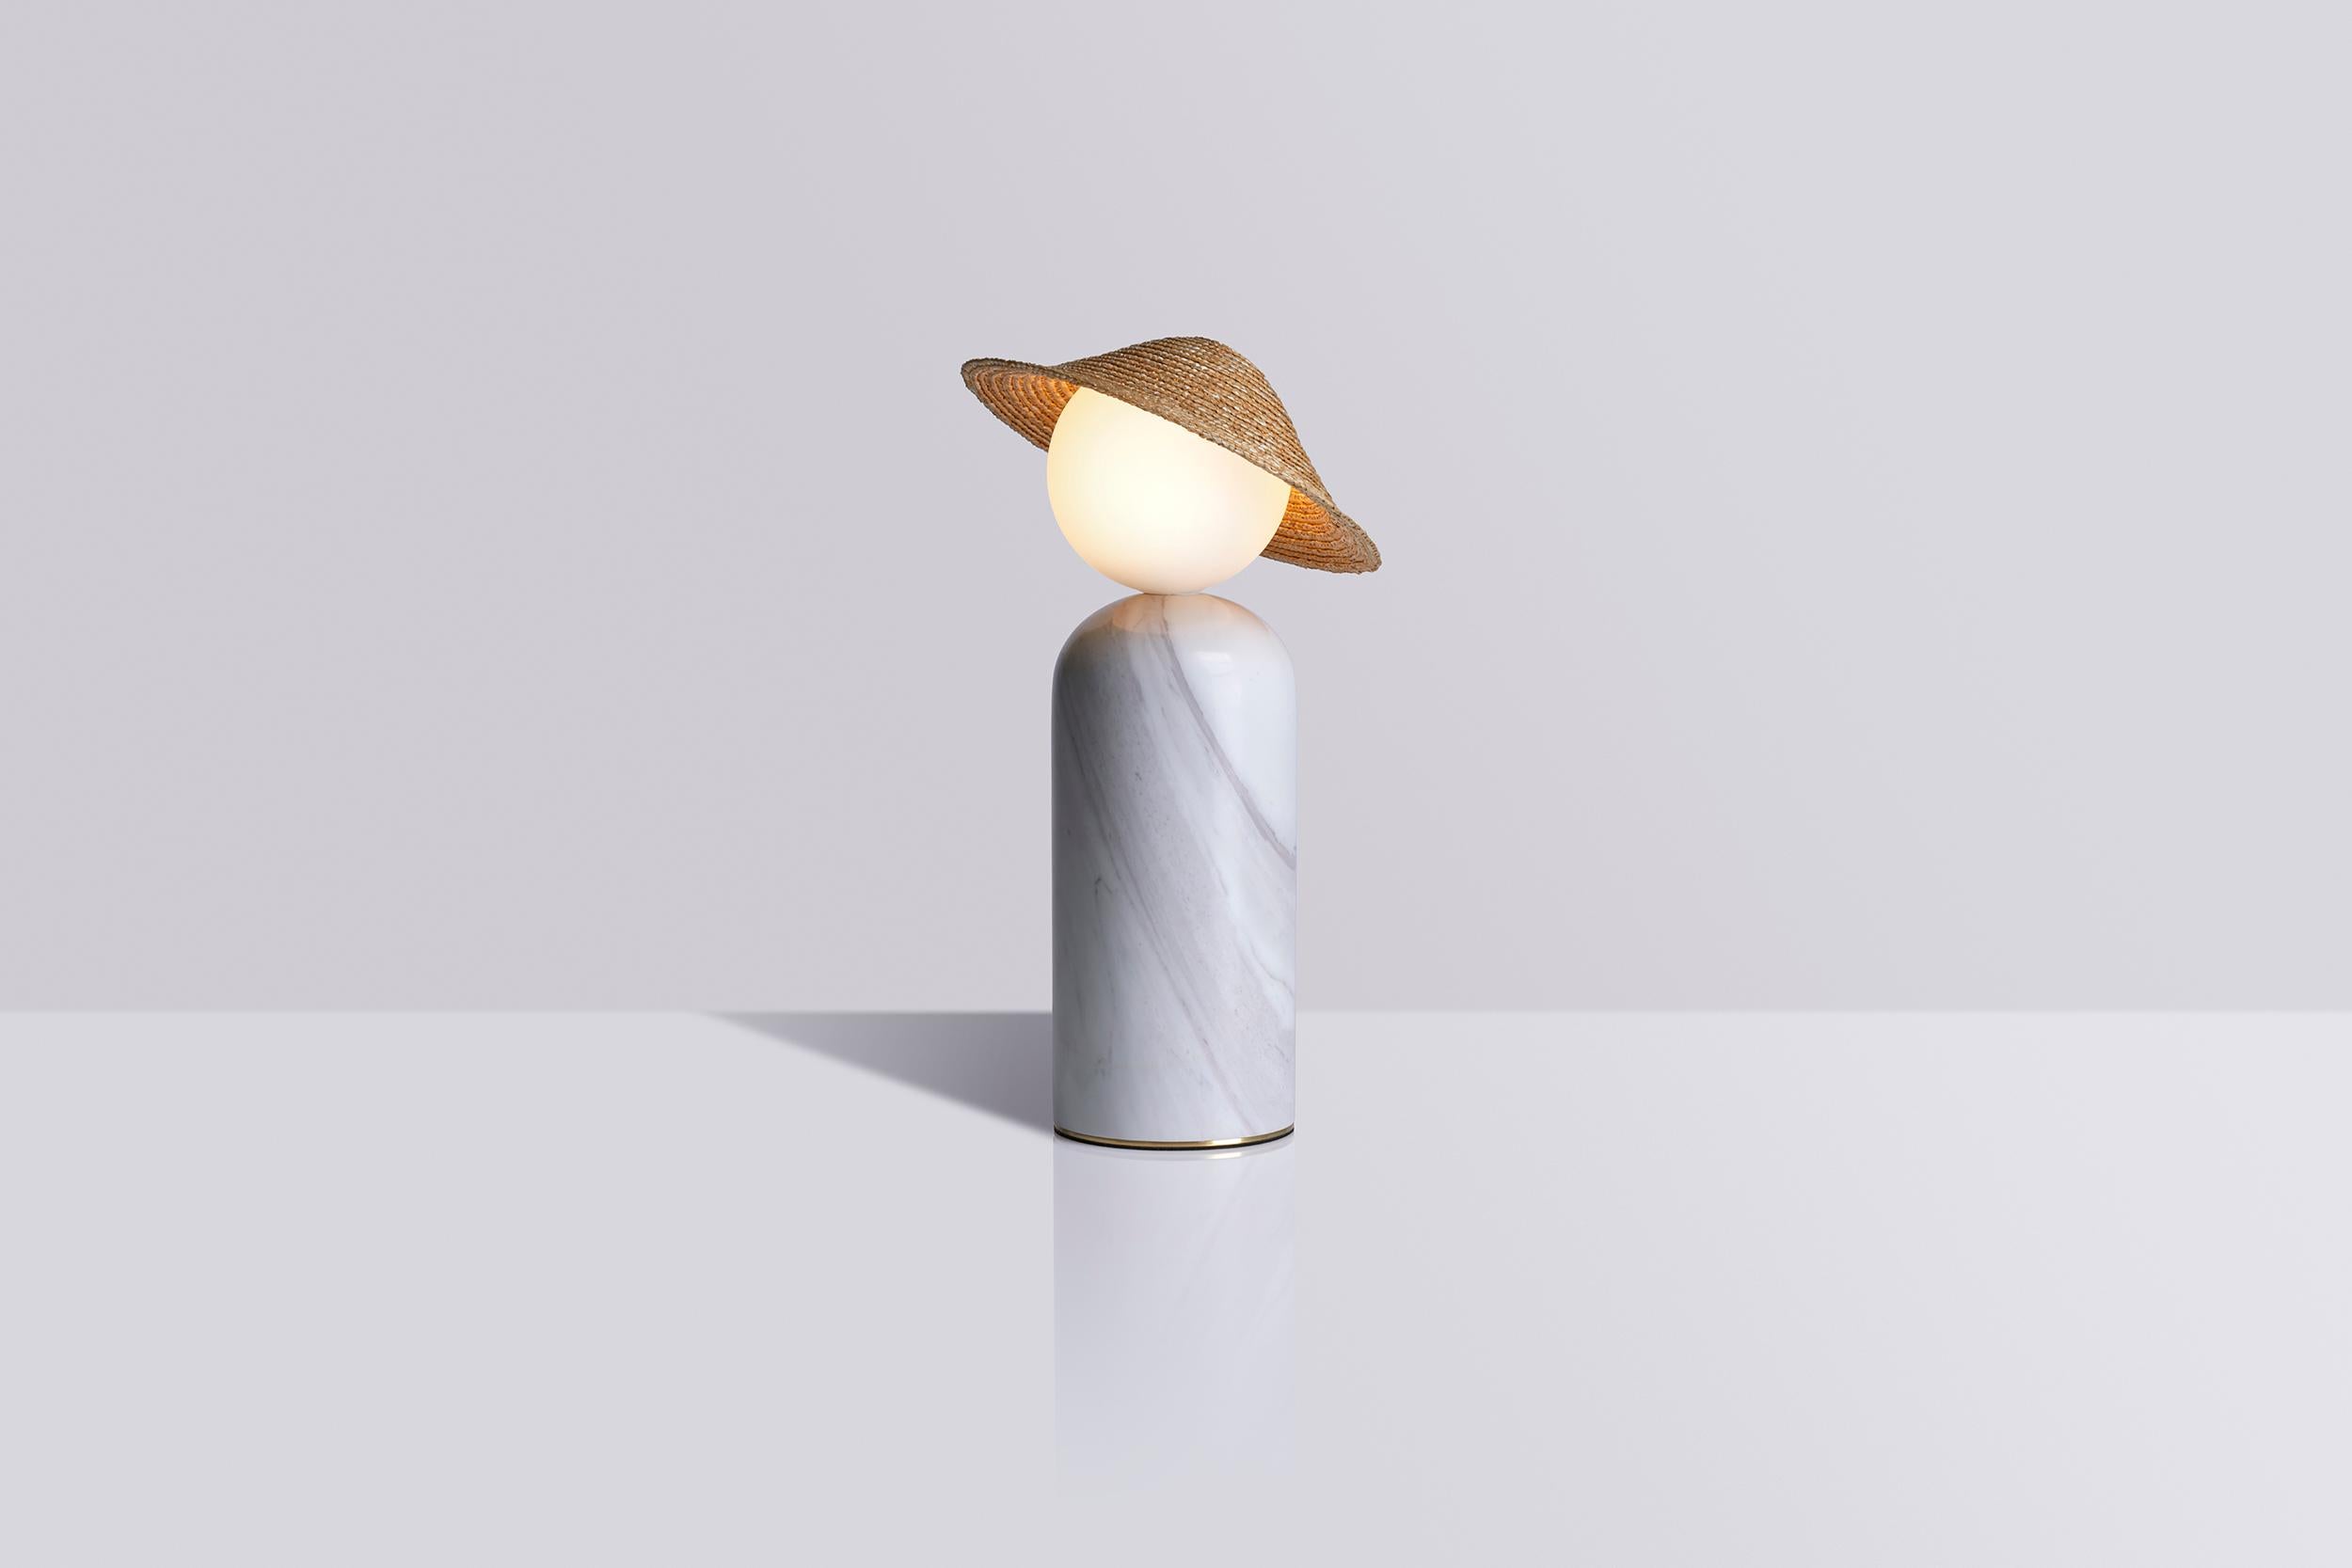 Théros 0.1 est une lampe de table - un geste de design poétique qui combine une forme nette et équilibrée avec une histoire personnelle et sincère. L'adorable personnage des lampes évoque dans toute sa simplicité l'image d'un enfant au soleil,